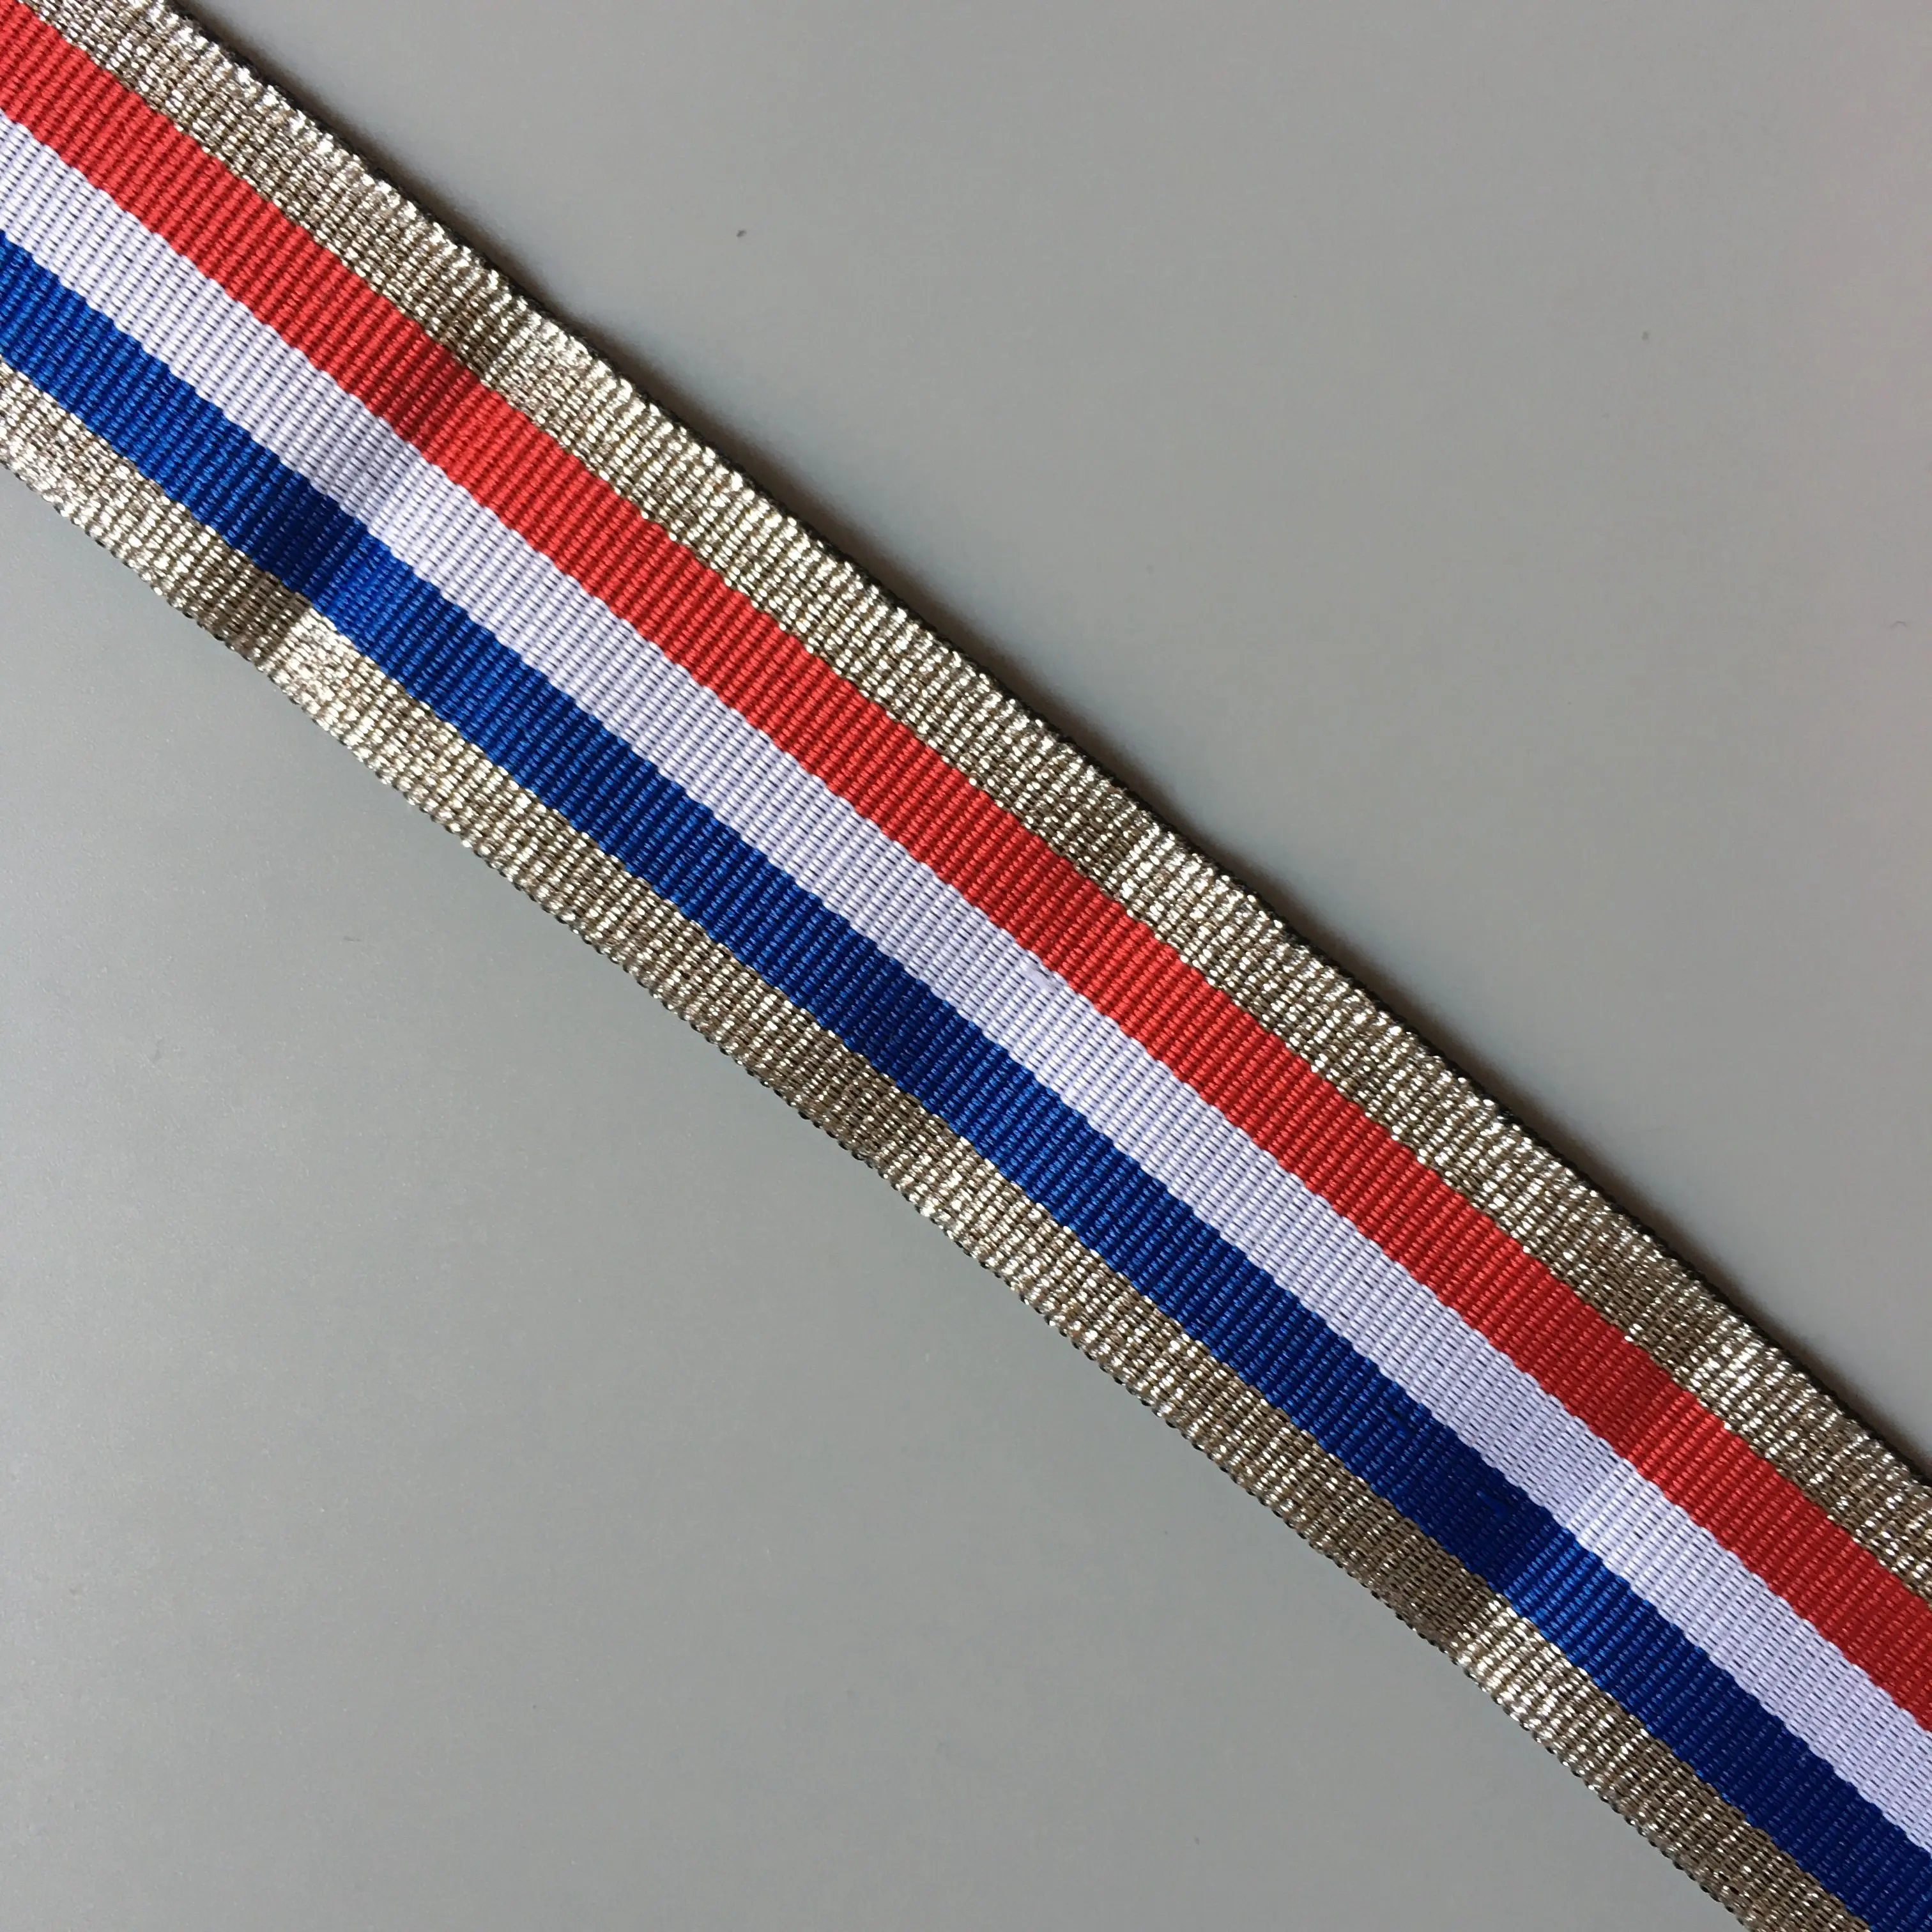 Französisch flagge metallic band mit streifen von silber weiß blau rot